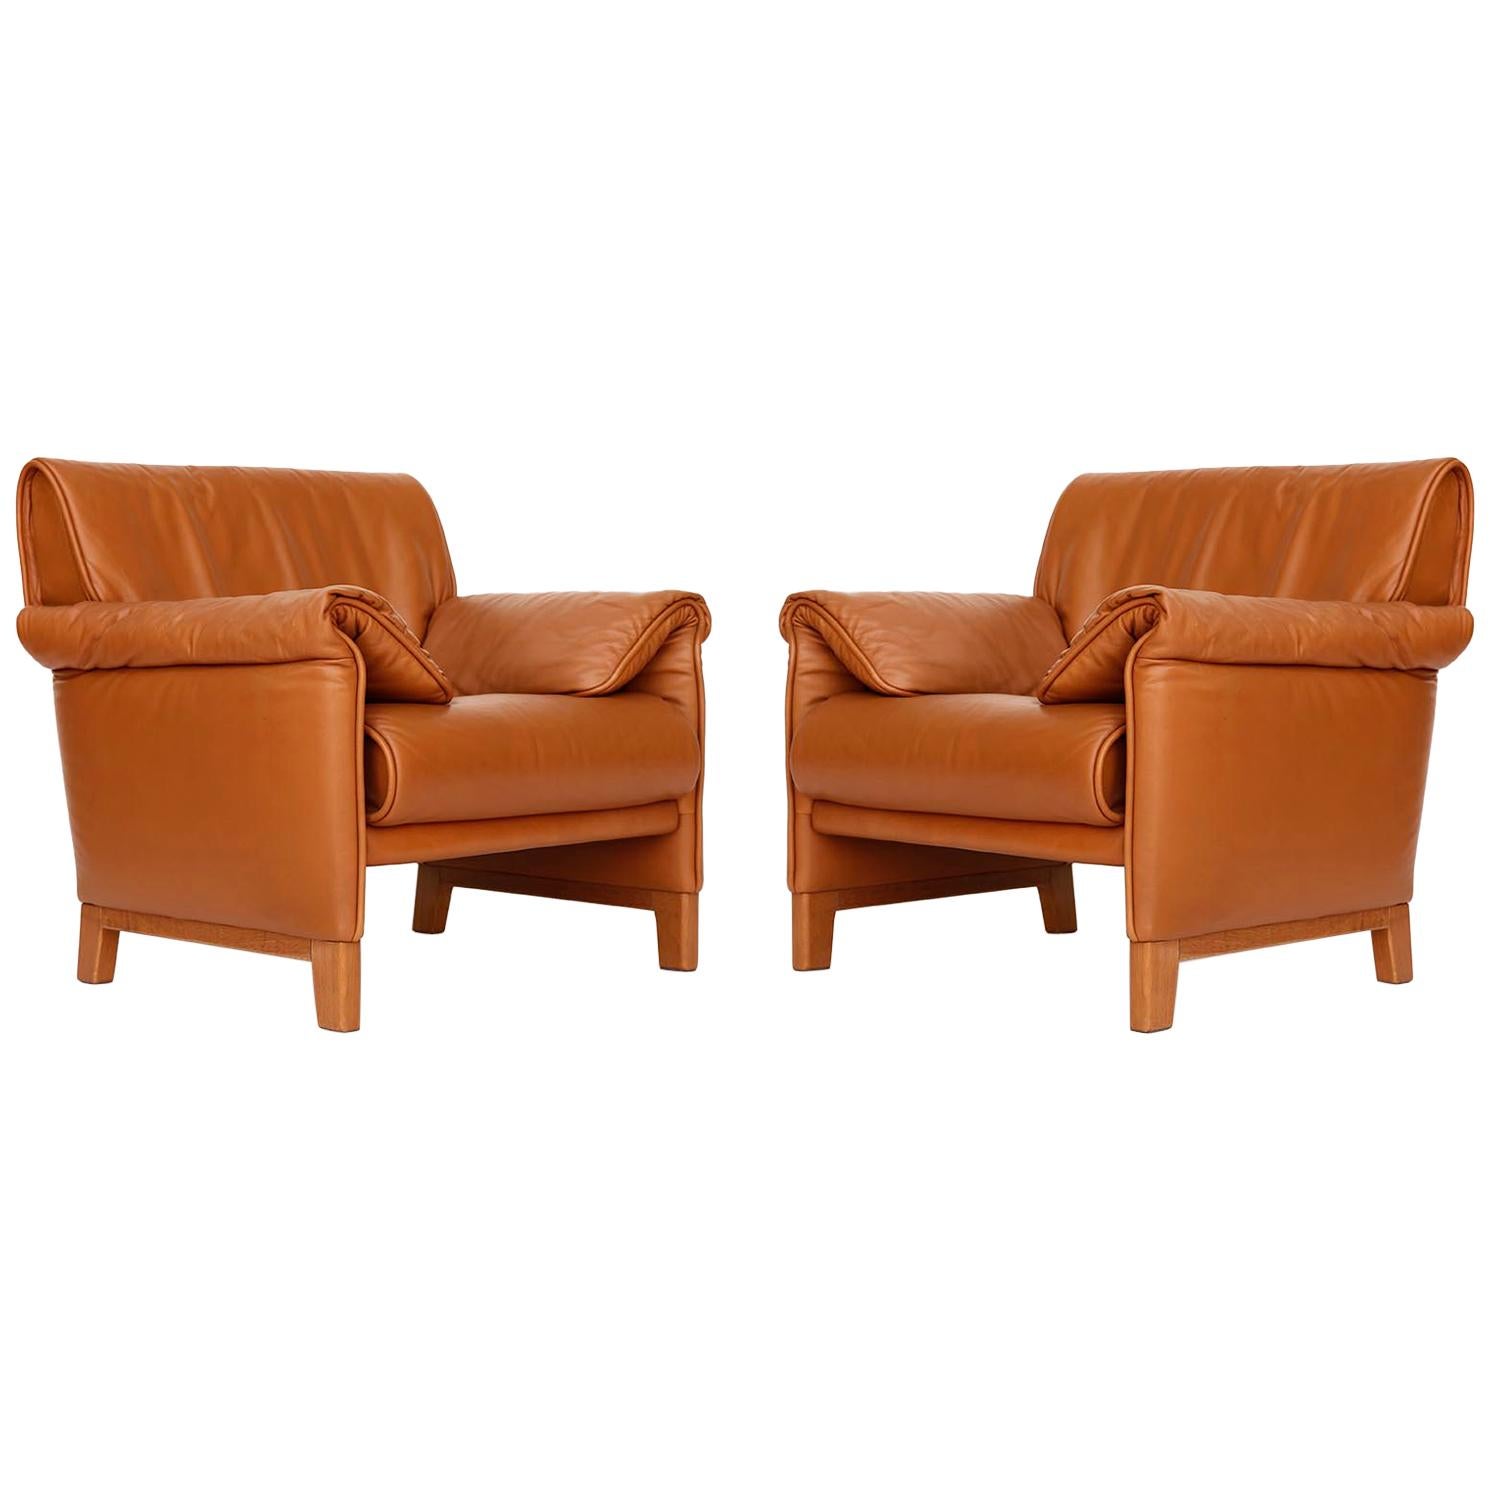 Einer von vier De Sede 'DS-14' Sesseln in warmem, hochwertigem, cognacbraunem Leder mit einem massiven Teakholzgestell, entworfen 1989 und hergestellt zwischen 1989 und 1997.
Die Stühle sind in sehr gutem und fast neuem Zustand. Sie sind innen mit